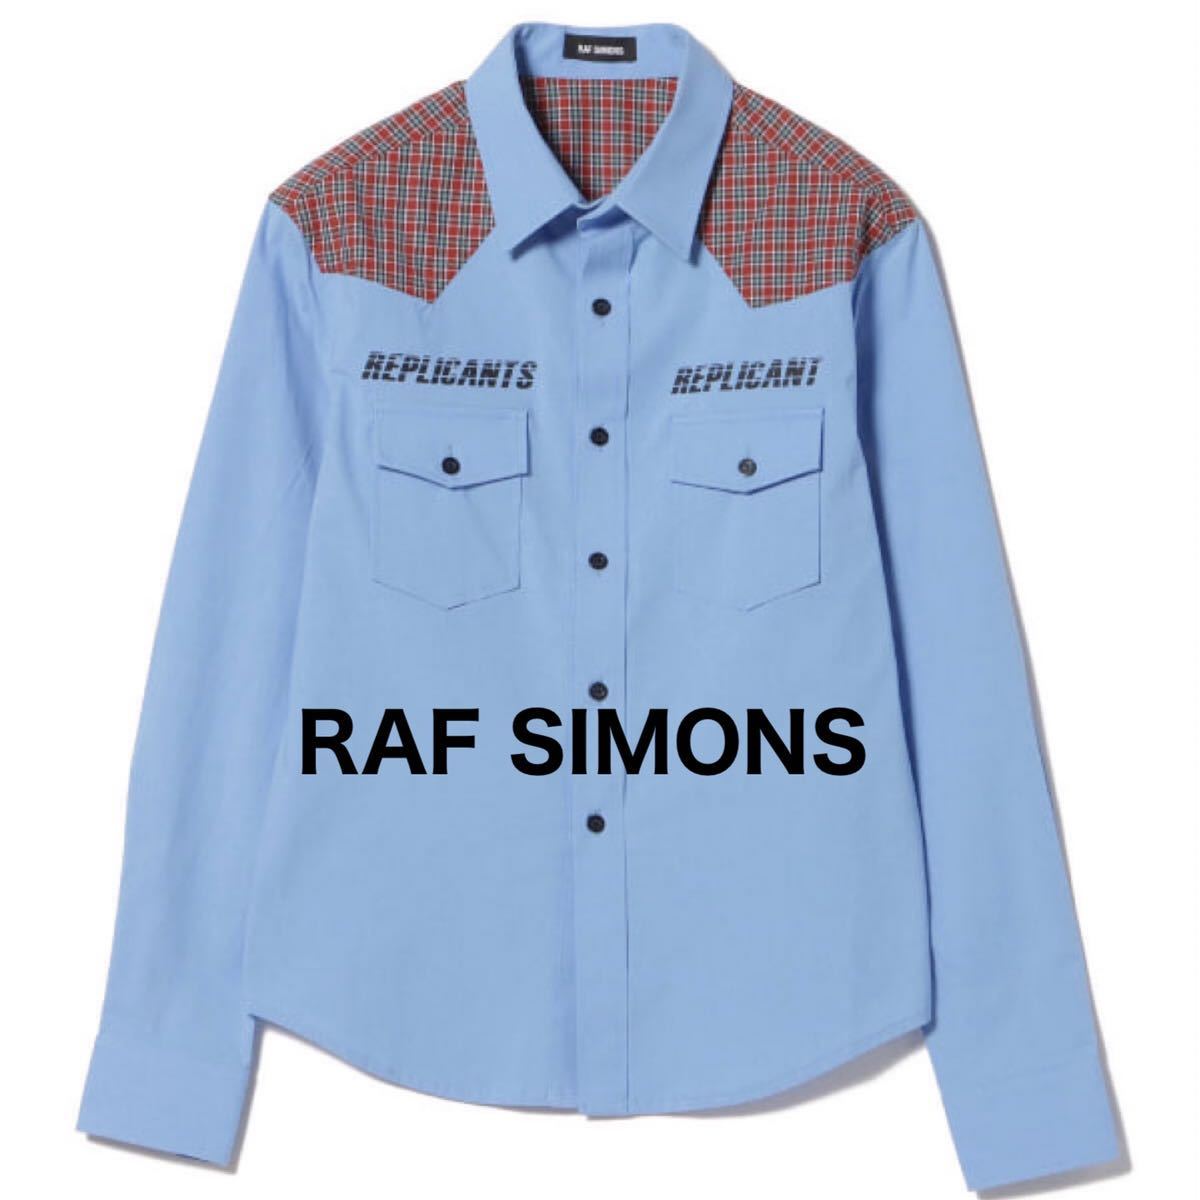 [ новый товар ] быстрое решение * RAF SIMONS Raf Simons * 18ss проверка рубашка в ковбойском стиле рубашка с длинным рукавом в клетку SHIRTS 46|M Италия производства 8.8 десять тысяч иен 